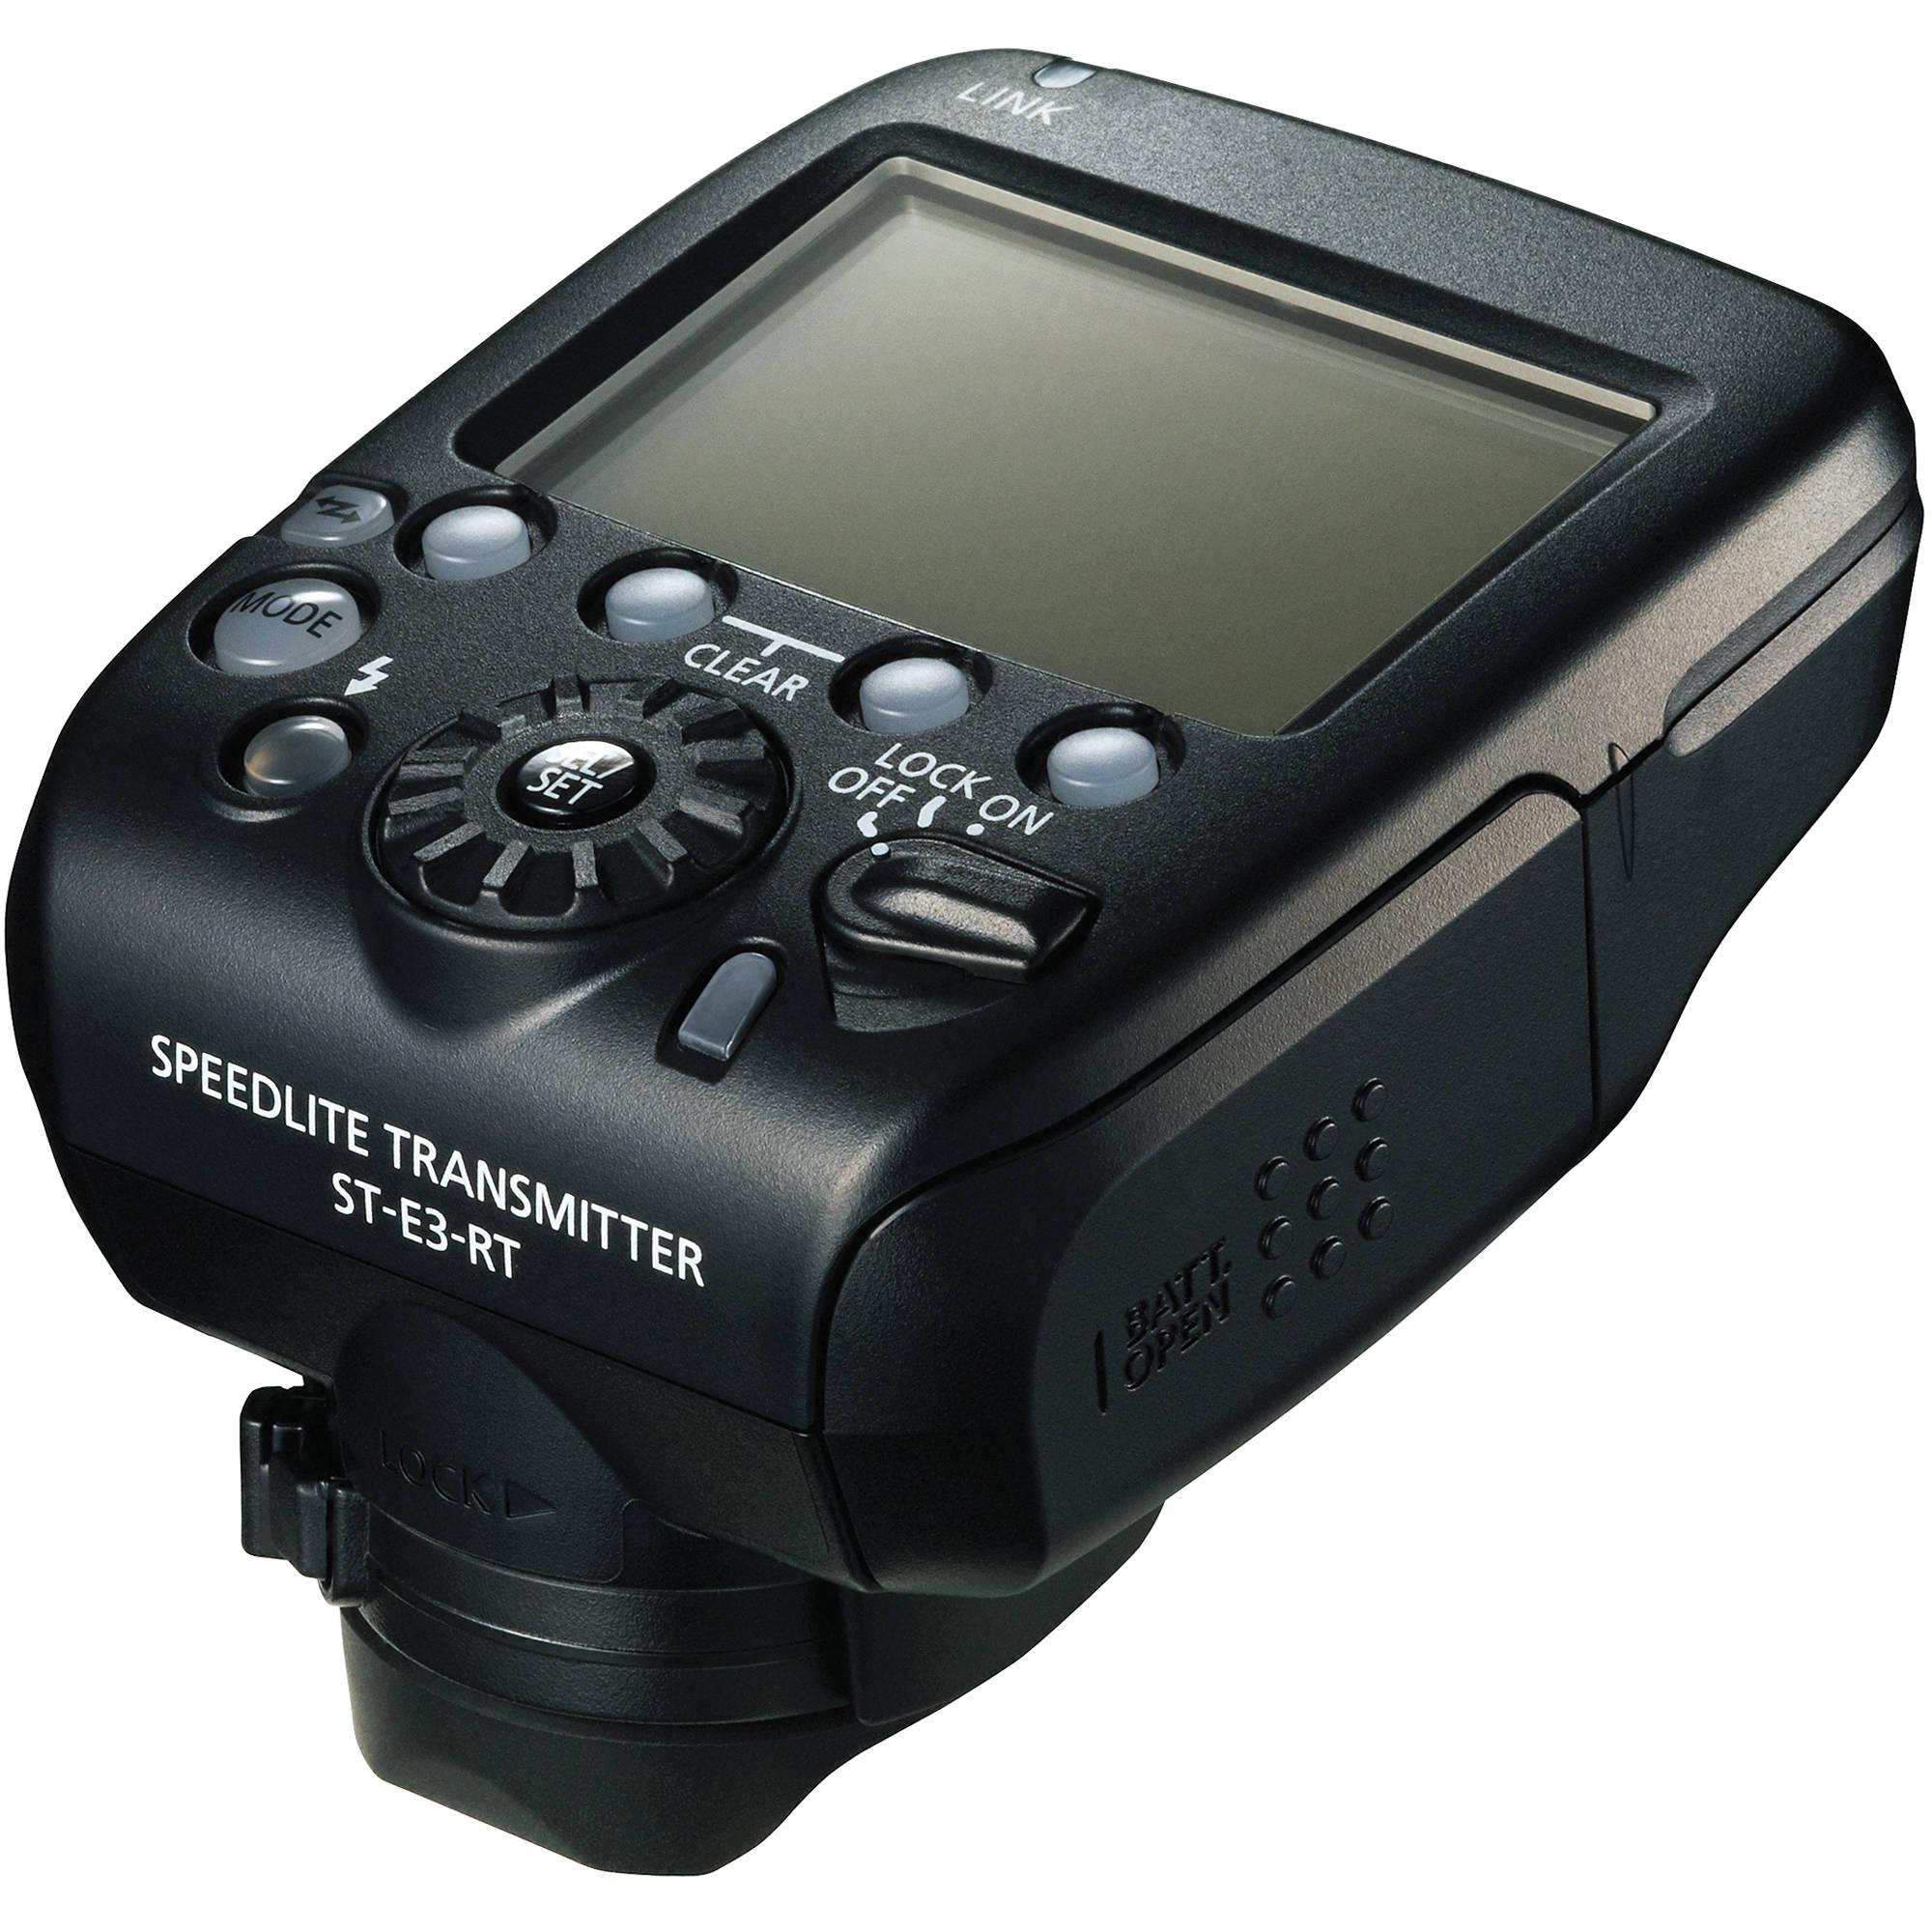 Canon ST-E3-RT Speedlite Transmitter for 600EX-RT Image